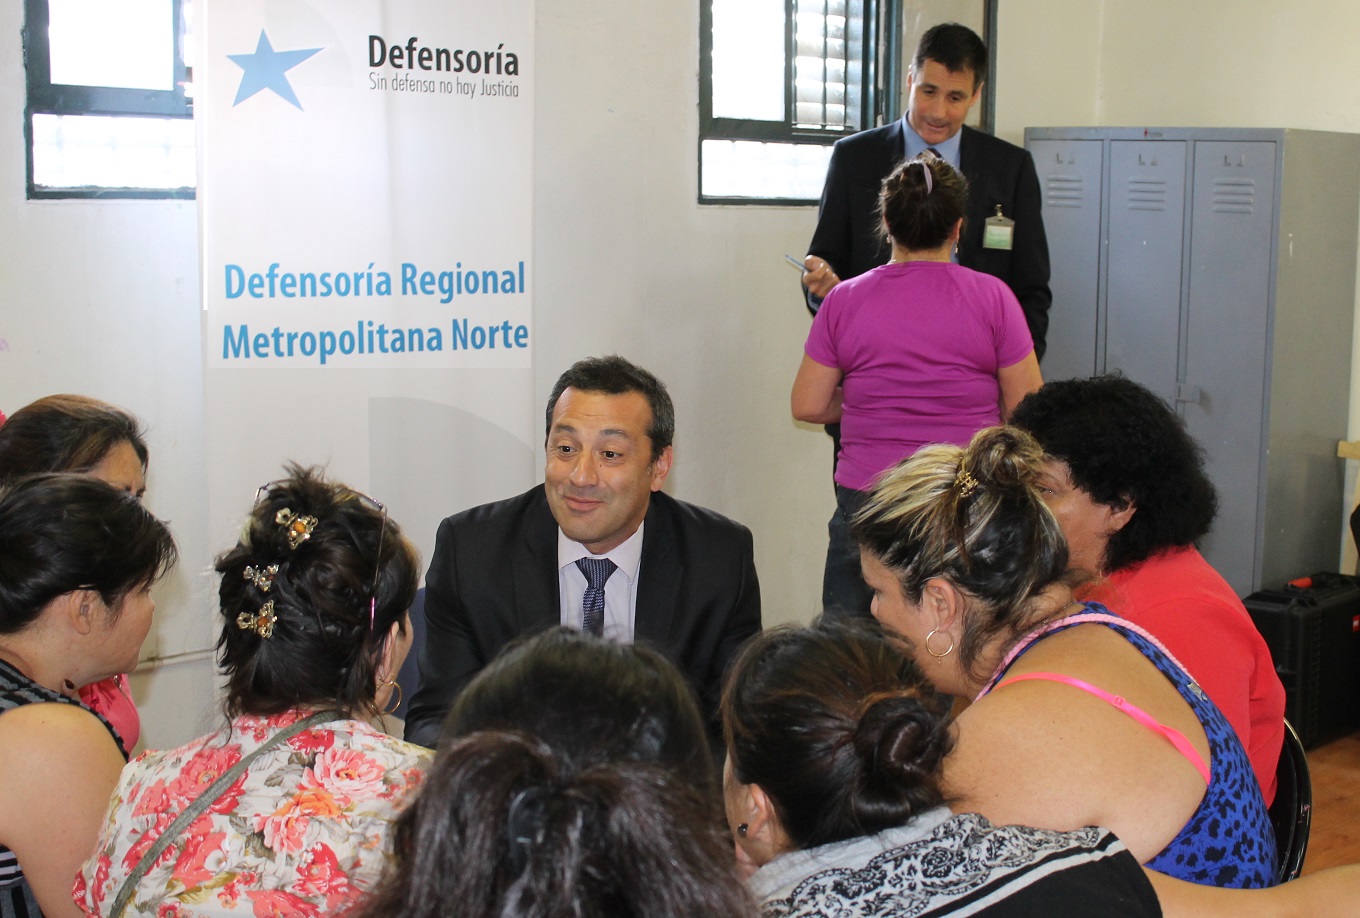 Tras las exposiciones, el equipo de la DRMN organizó a las internas en grupos. En la imagen, el Defensor Regional Carlos Mora dialoga con internas.